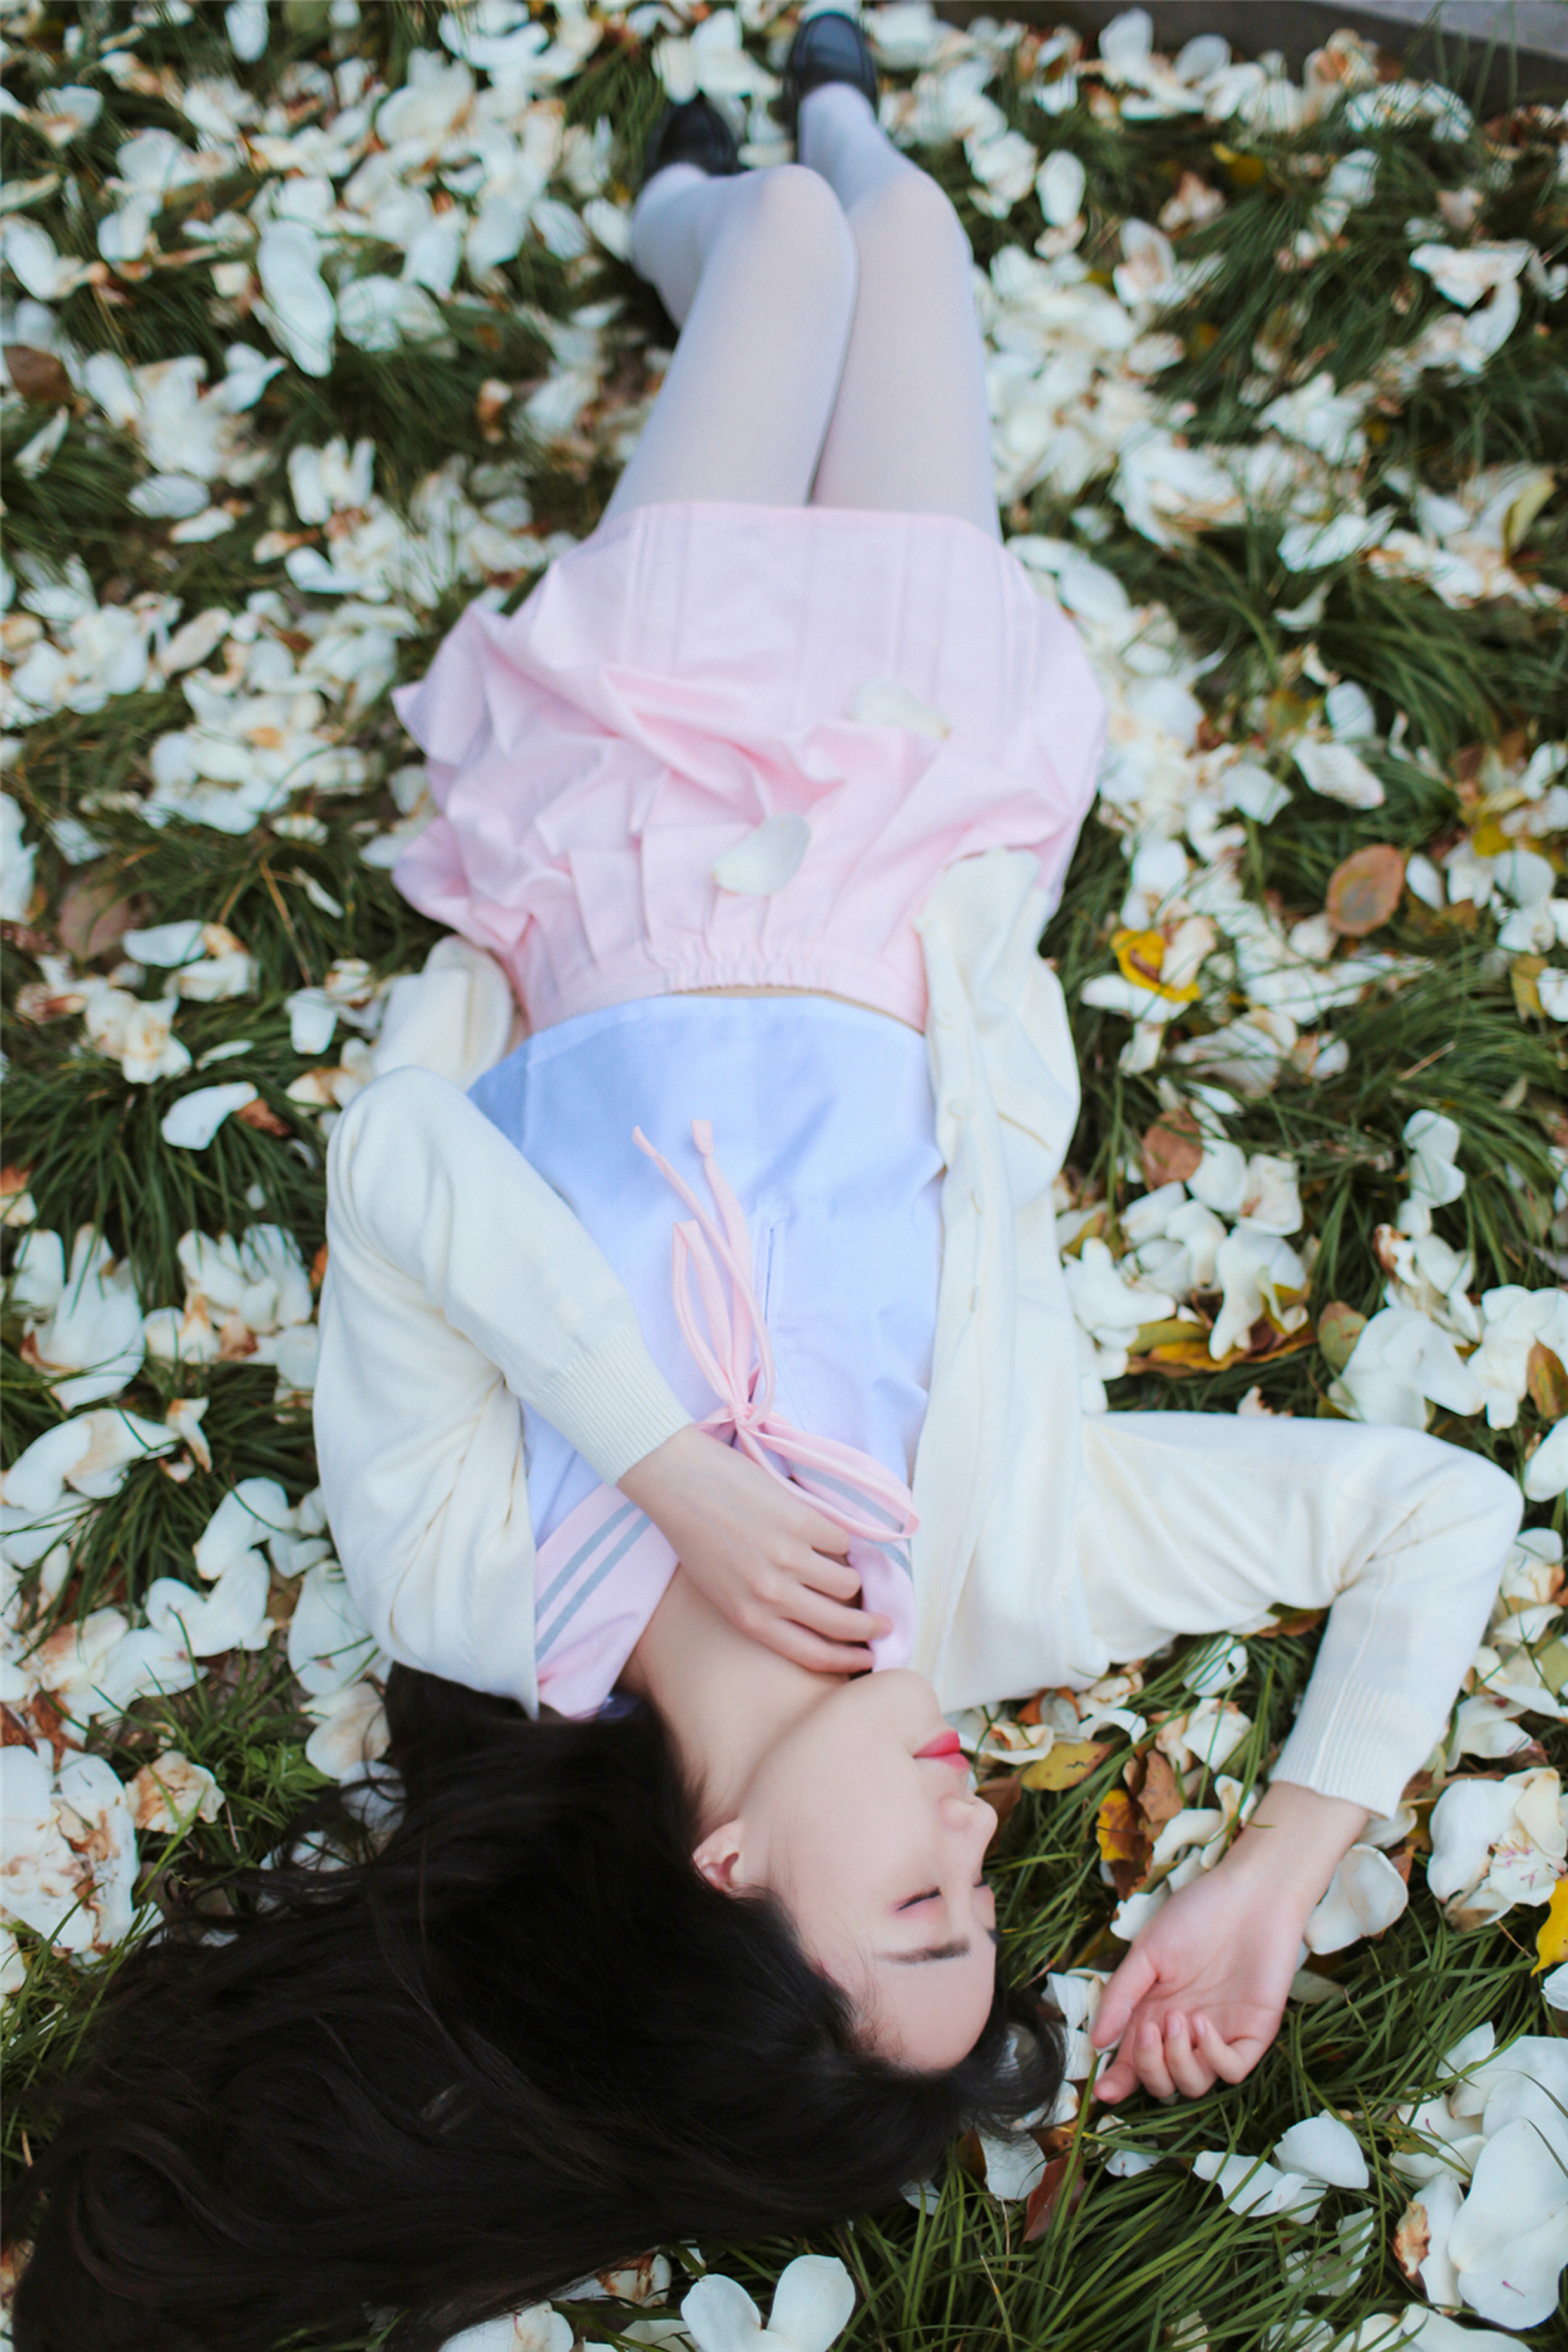 [风之领域]NO.191 游乐园内的清纯少女 粉色短裙加白色丝袜美腿性感私房写真集,